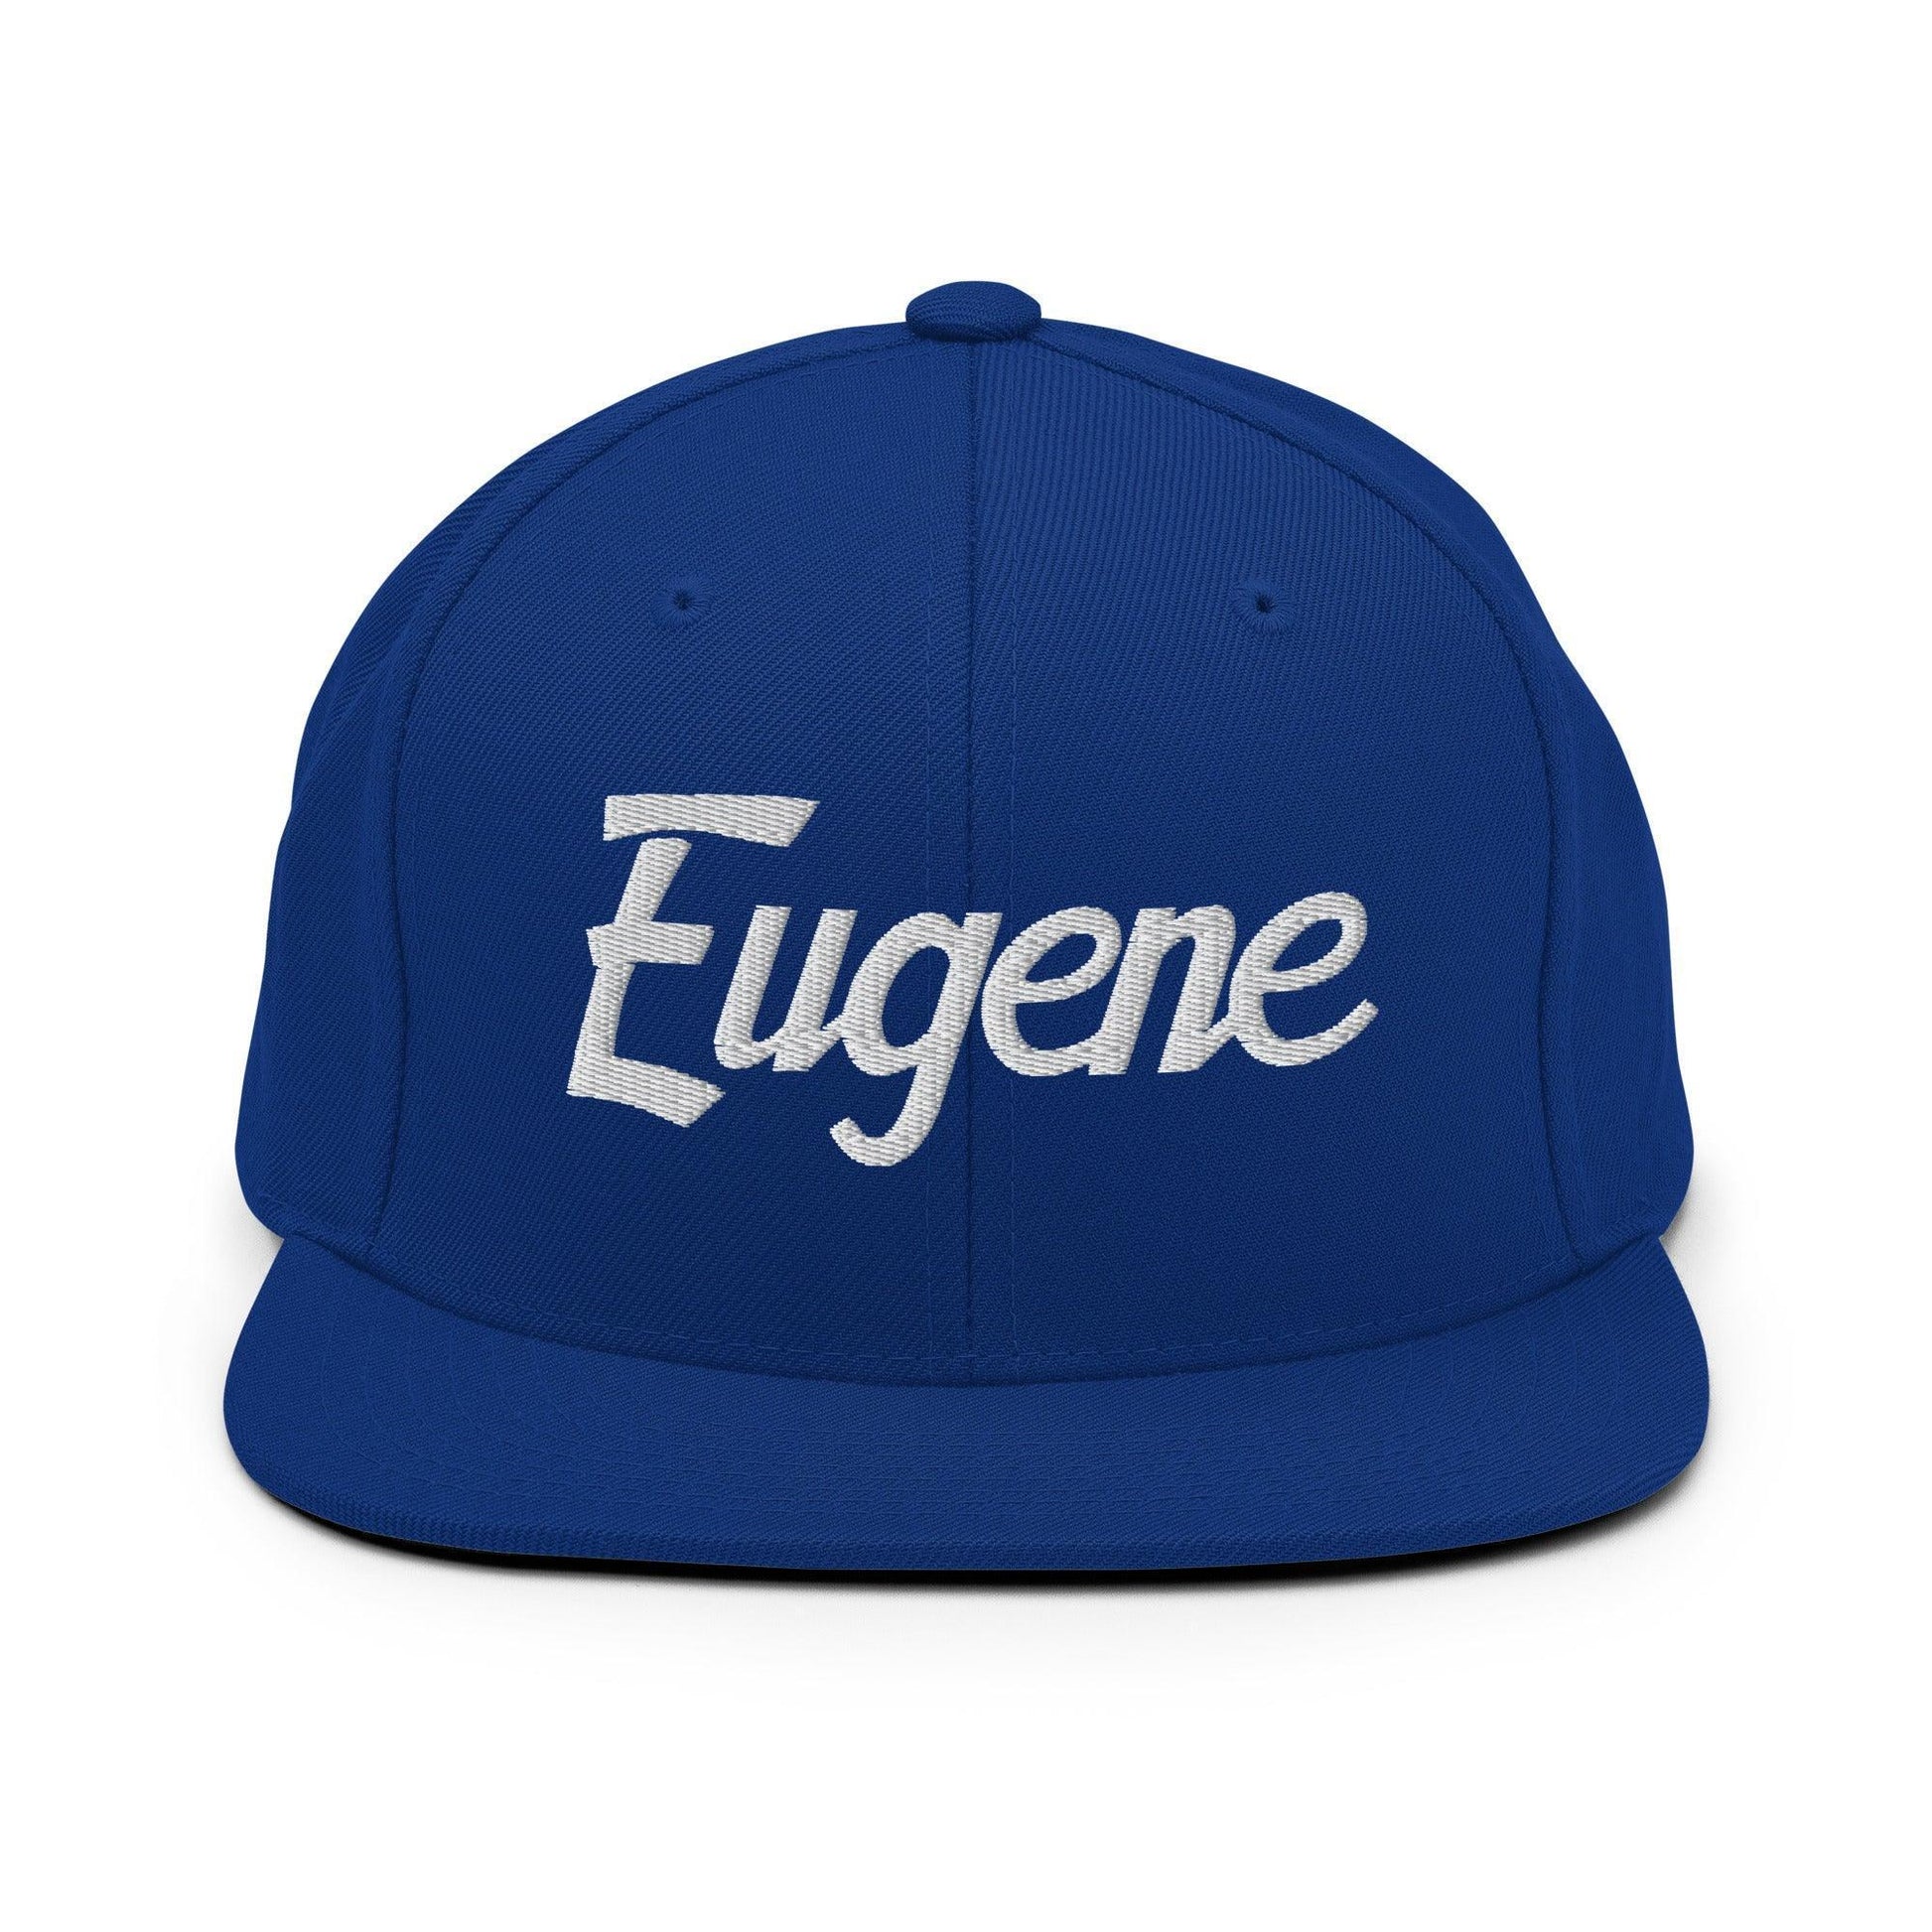 Eugene Script Snapback Hat Royal Blue